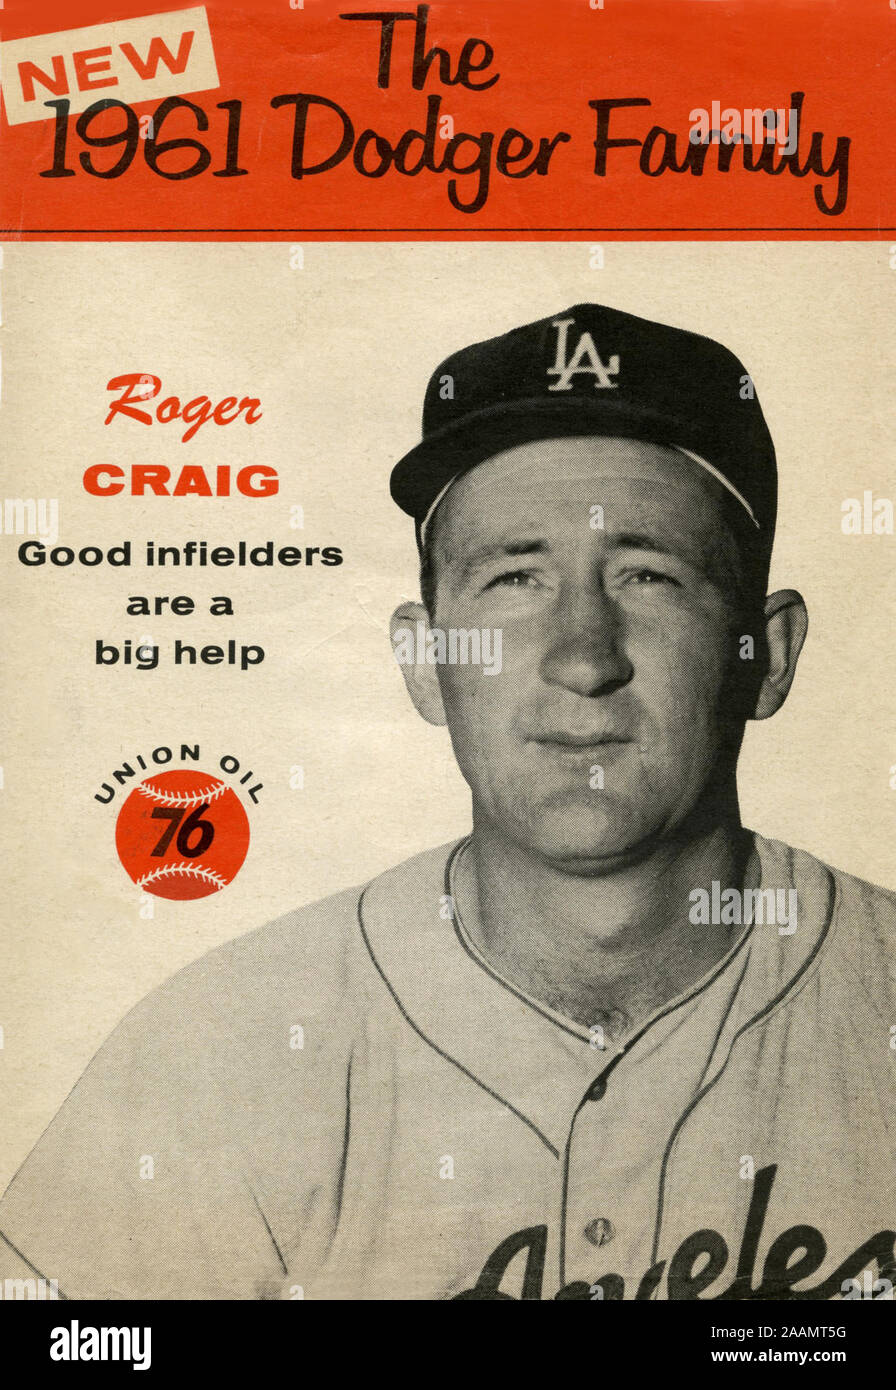 Ein Souvenir 1961 Dodger Family Album Broschüre über Krug Roger Craig war kostenlos als Premium an Kunden von 76 Tankstellen in Los Angeles Bereich verteilt. Stockfoto